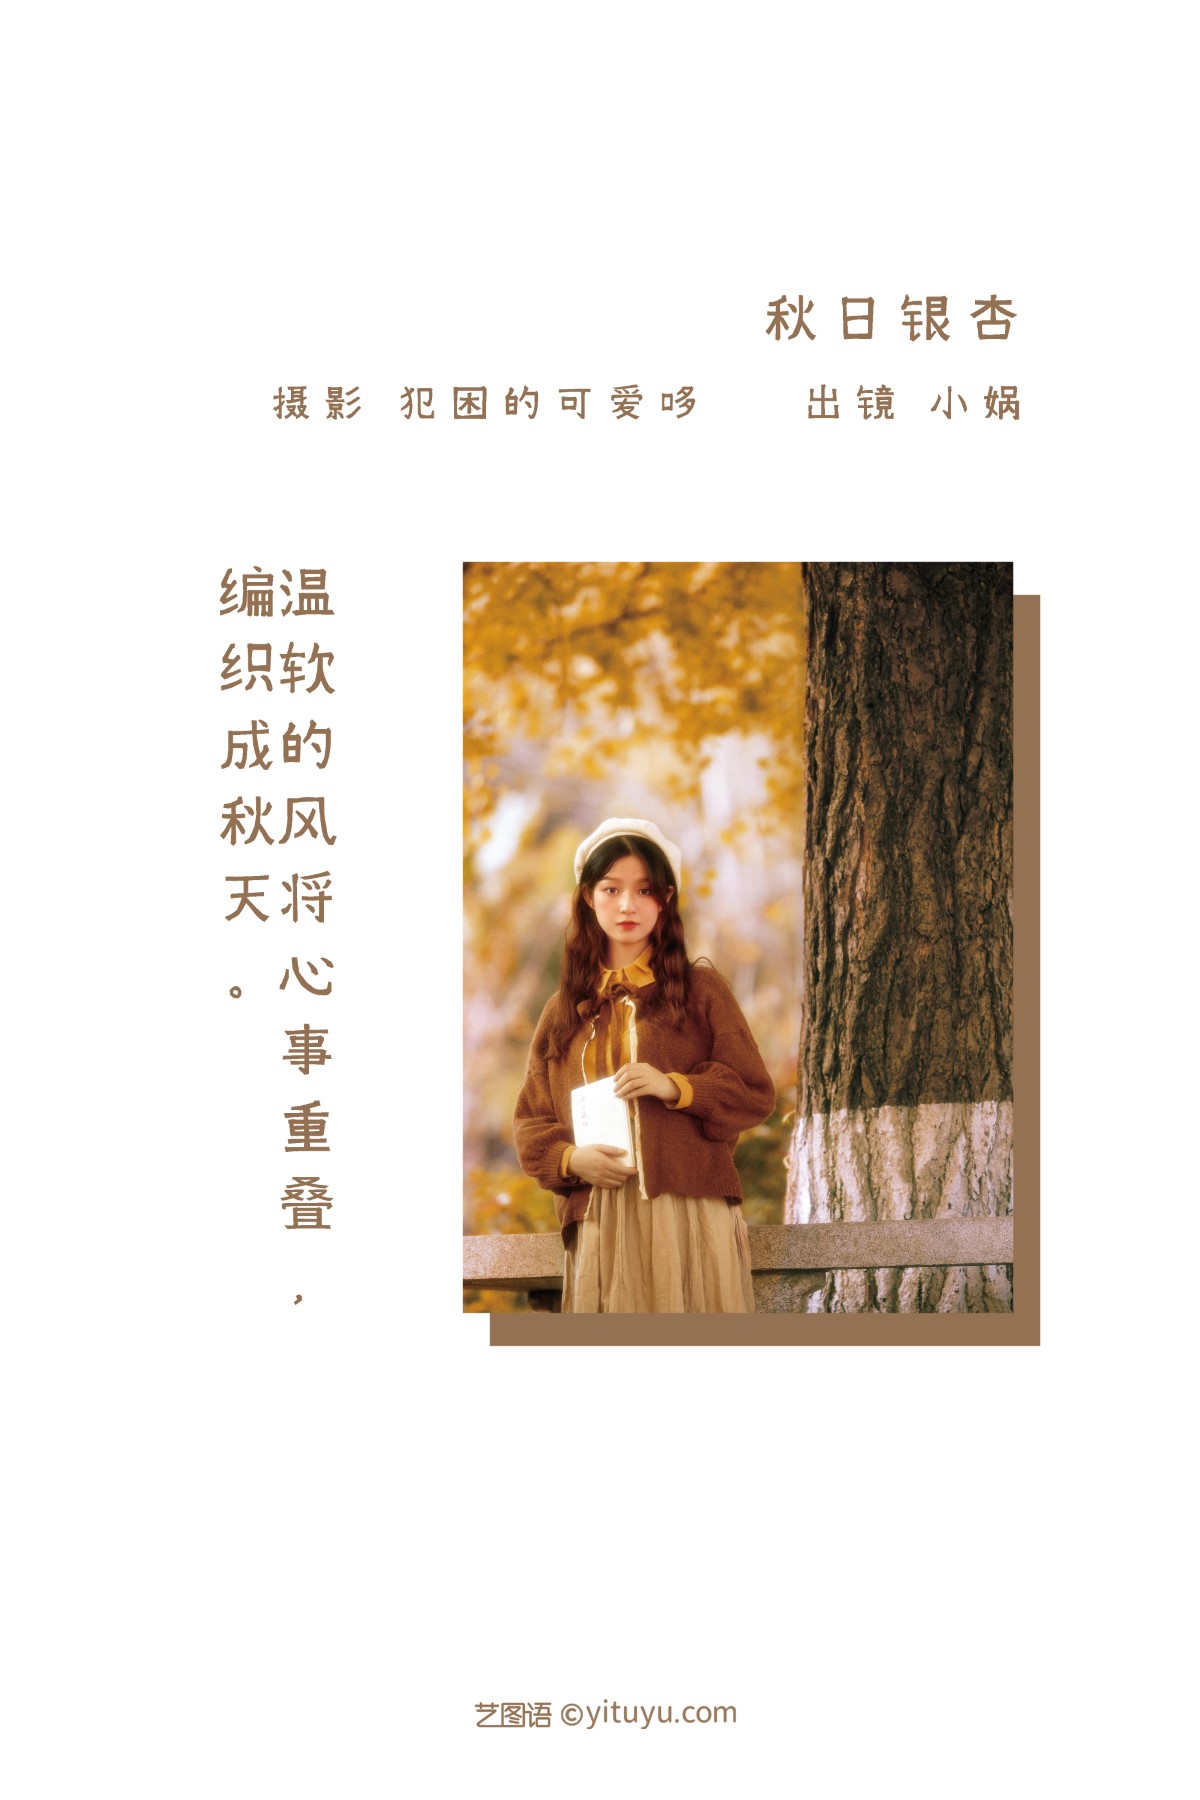 YiTuYu艺图语 Vol 1490 Xiao Wa 0001 6372085233.jpg